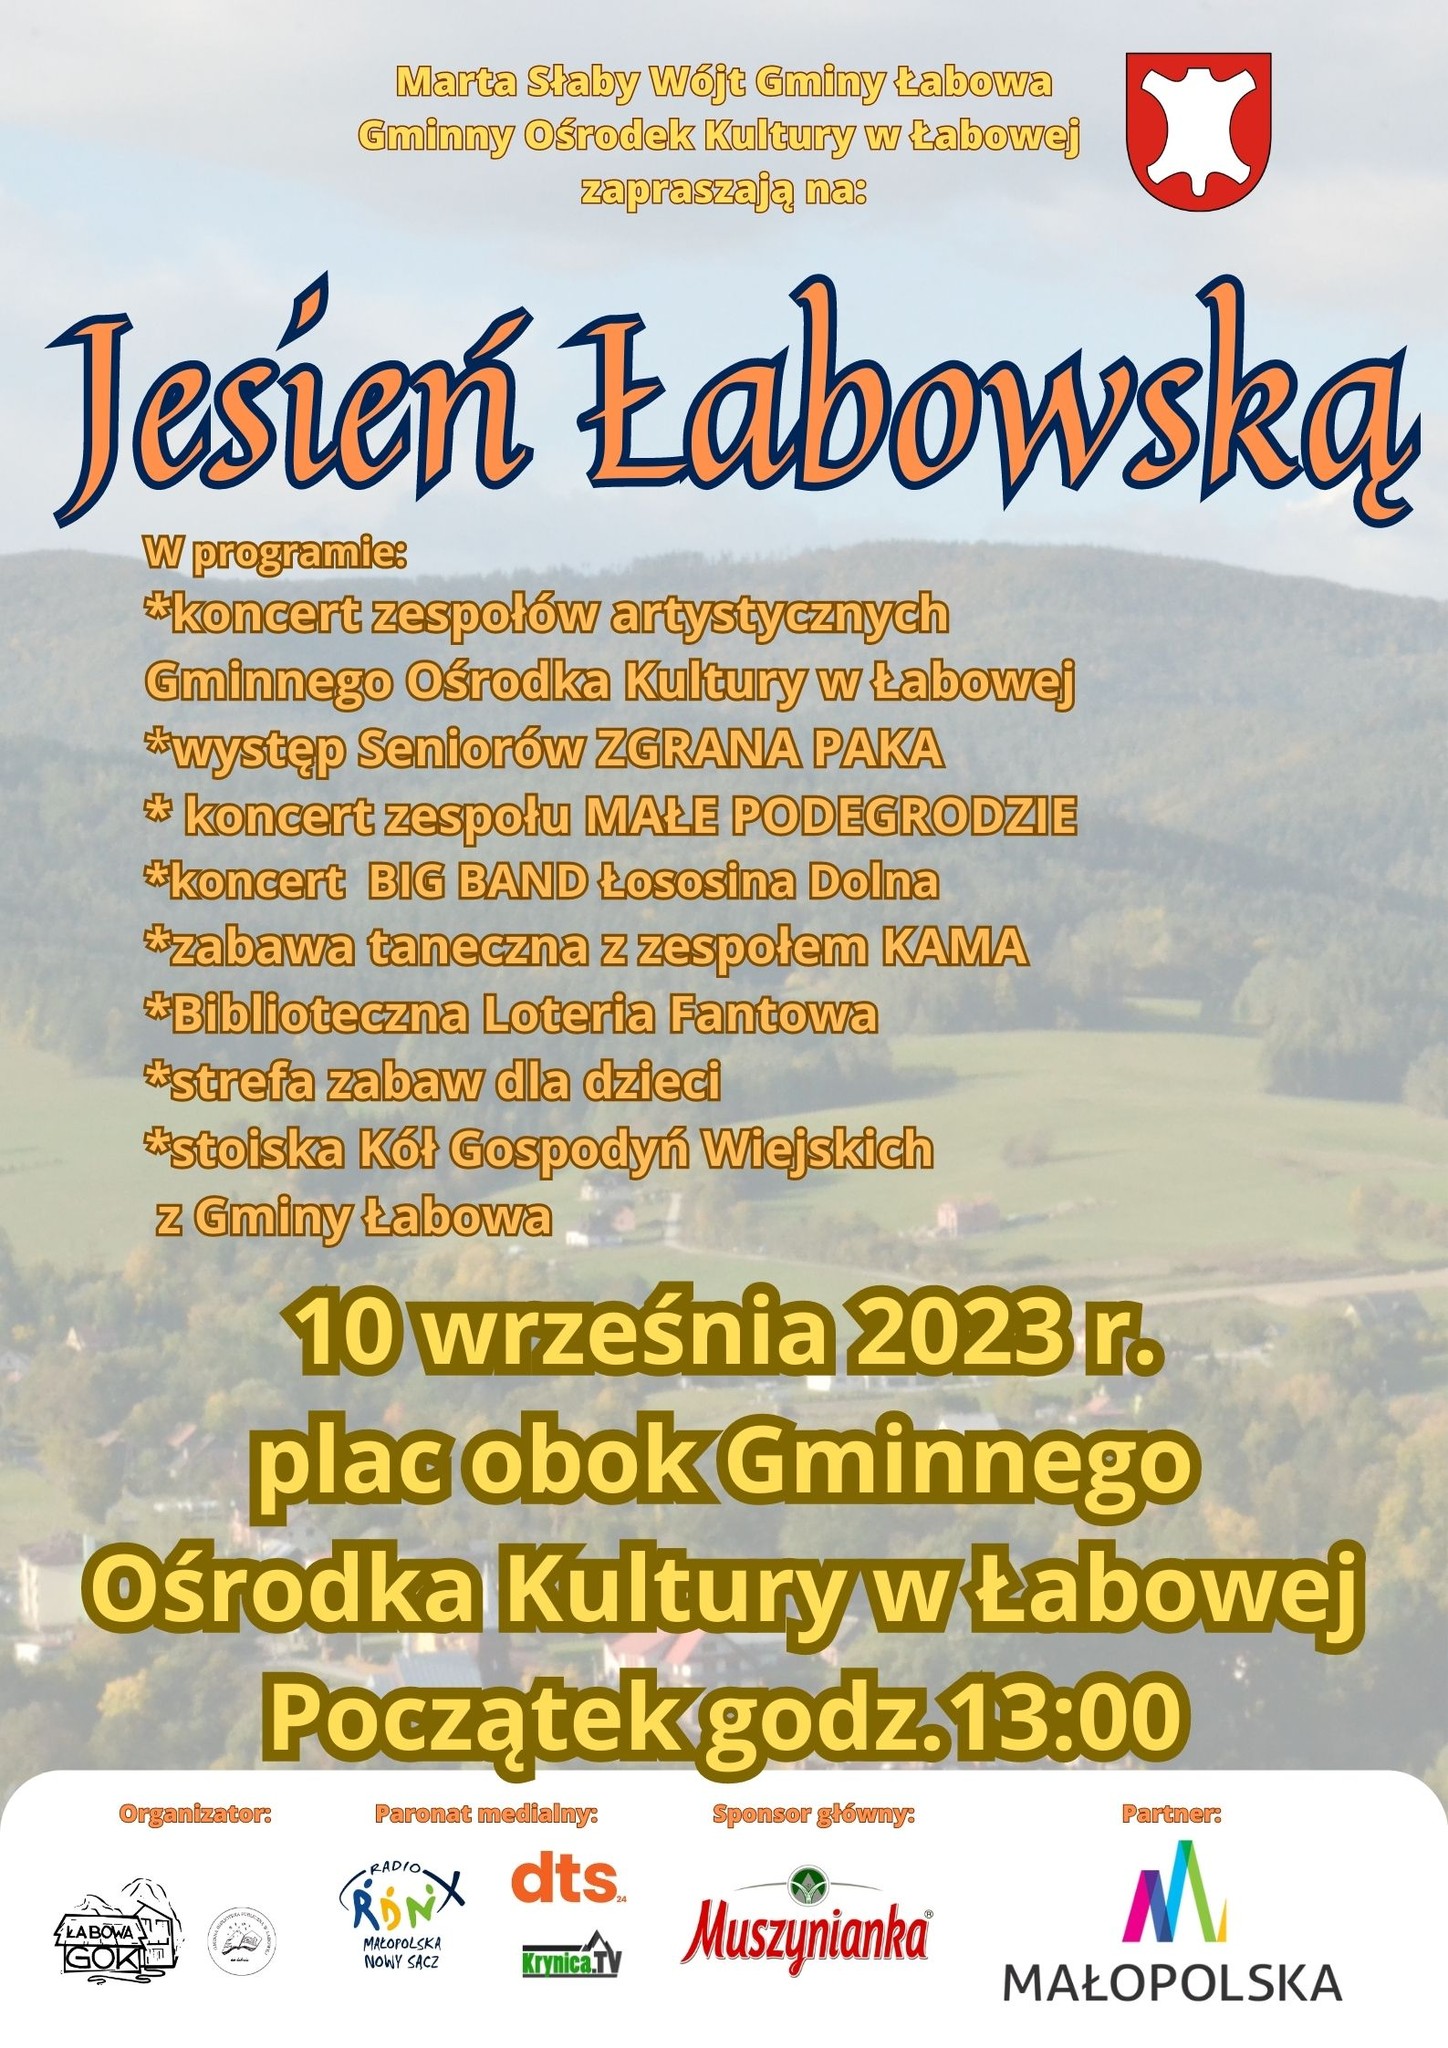 Jesień Łabowska